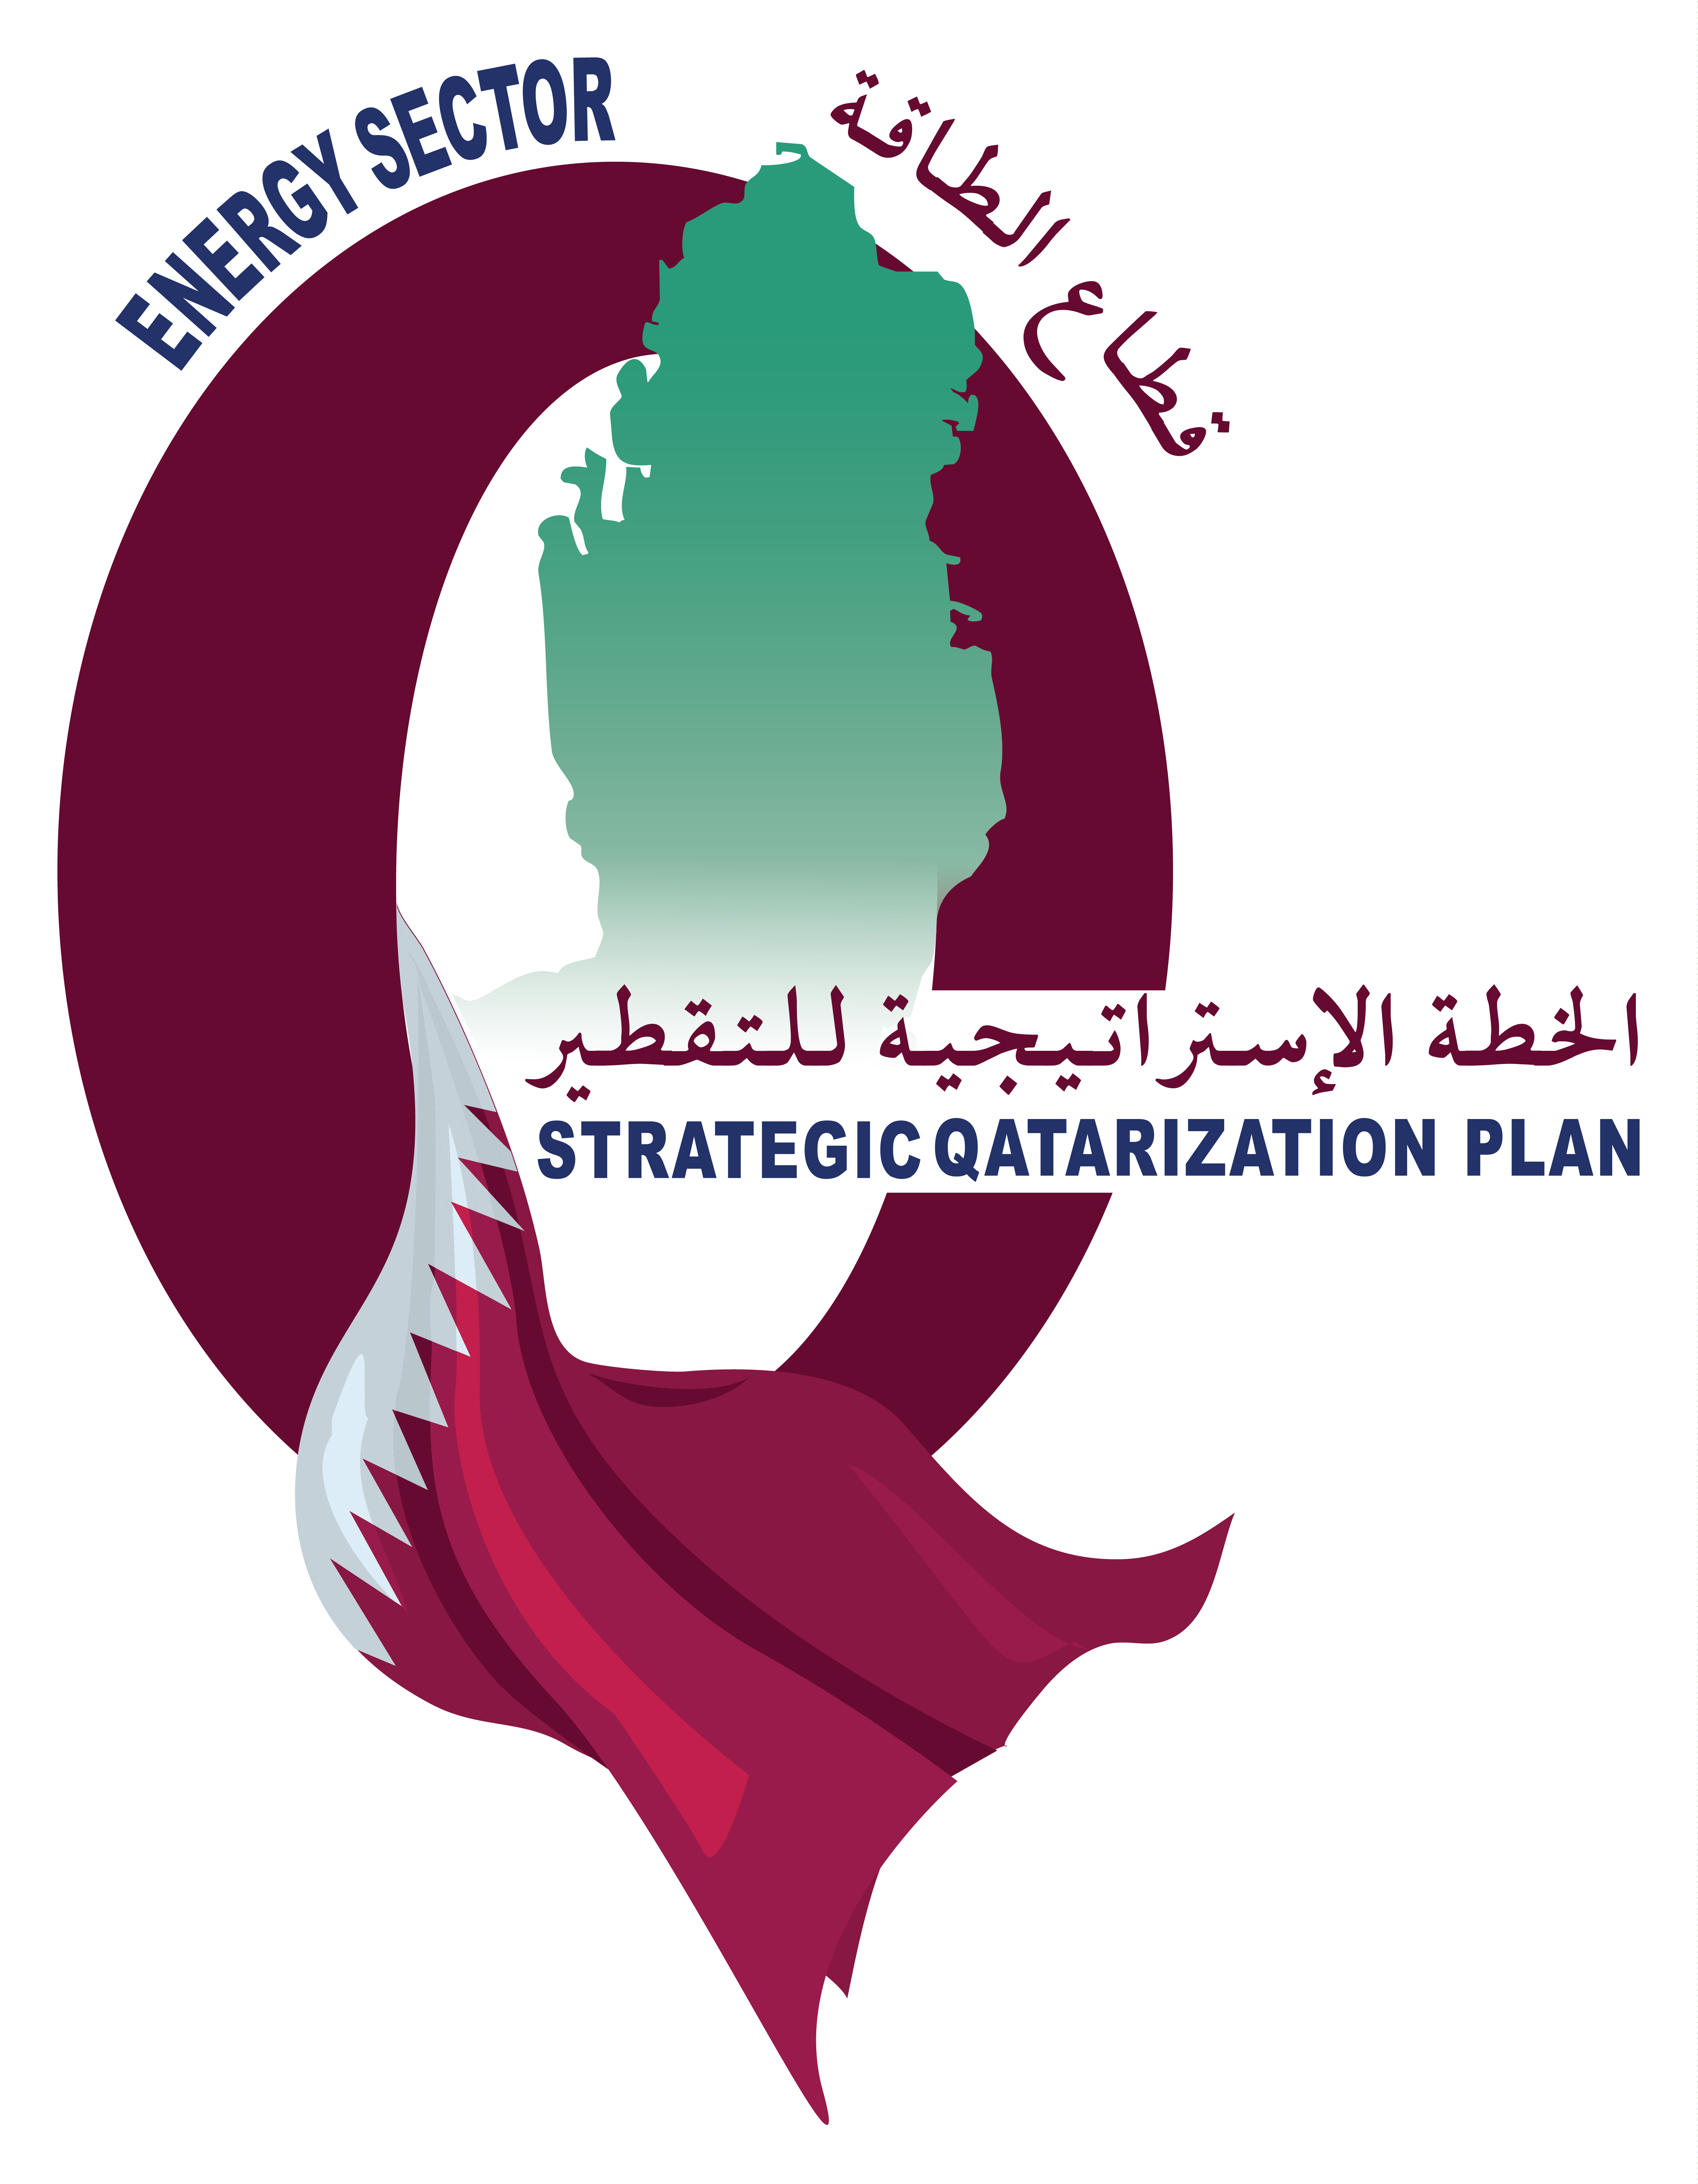 About Qatarization